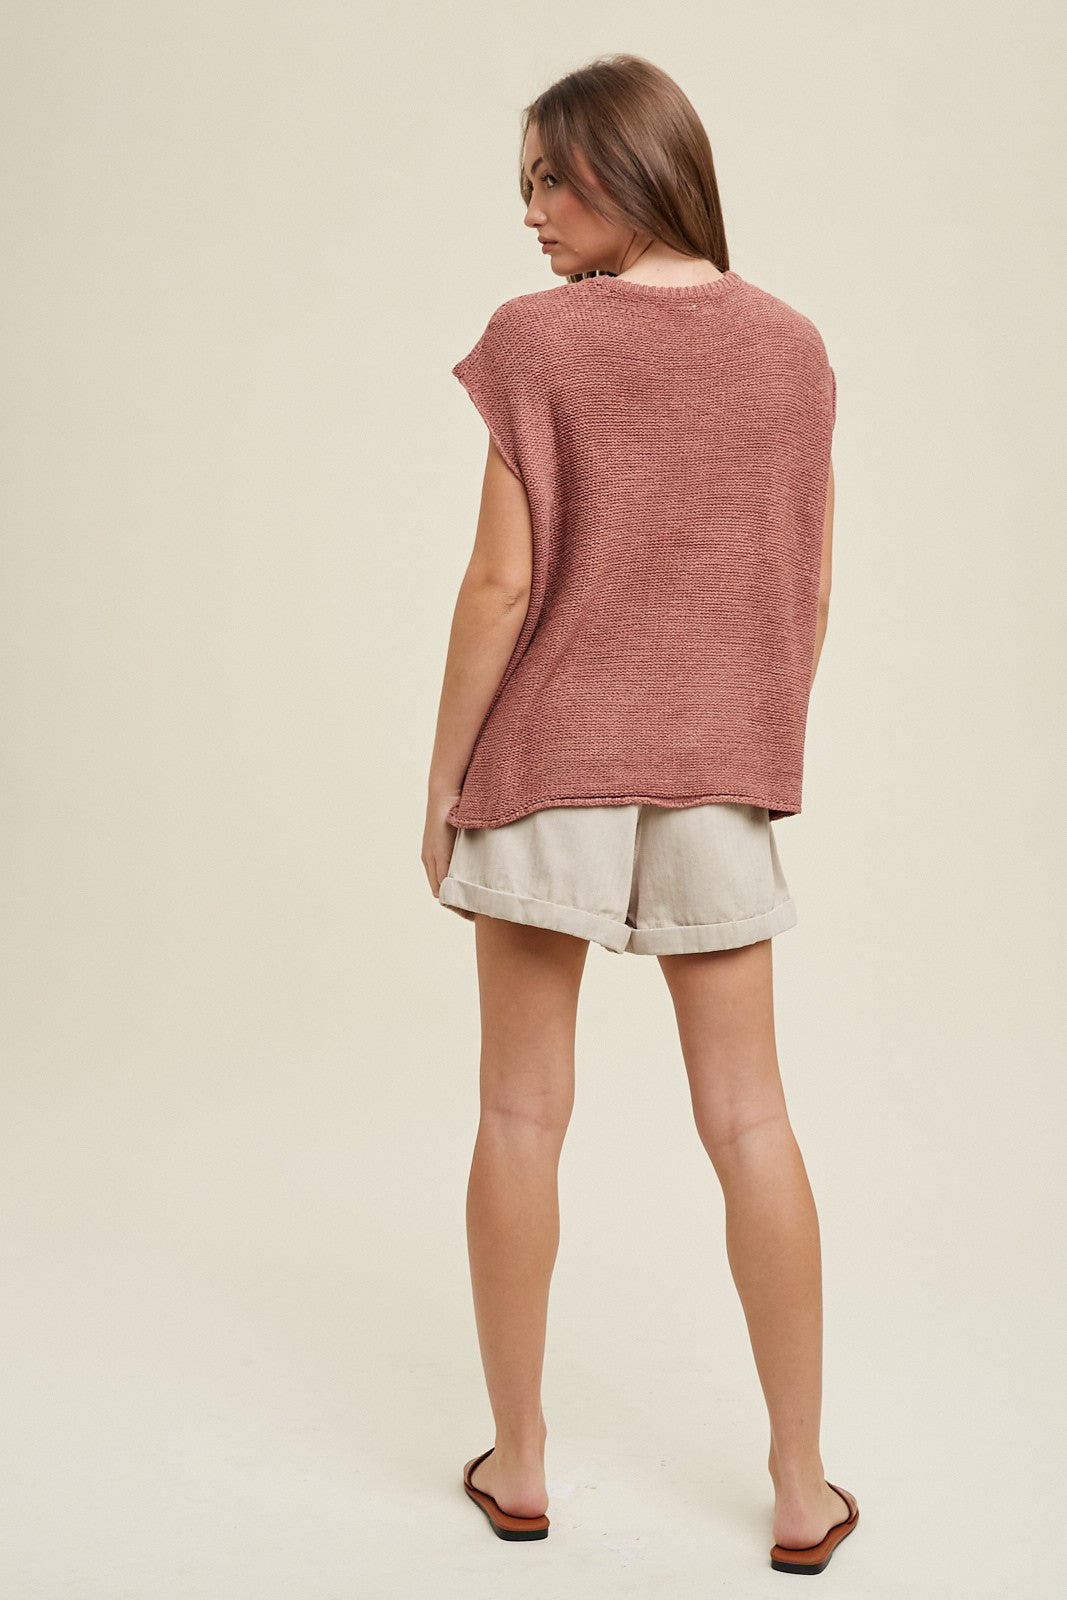 Ellie Girl Crochet Sweater Vest (Red Bean)